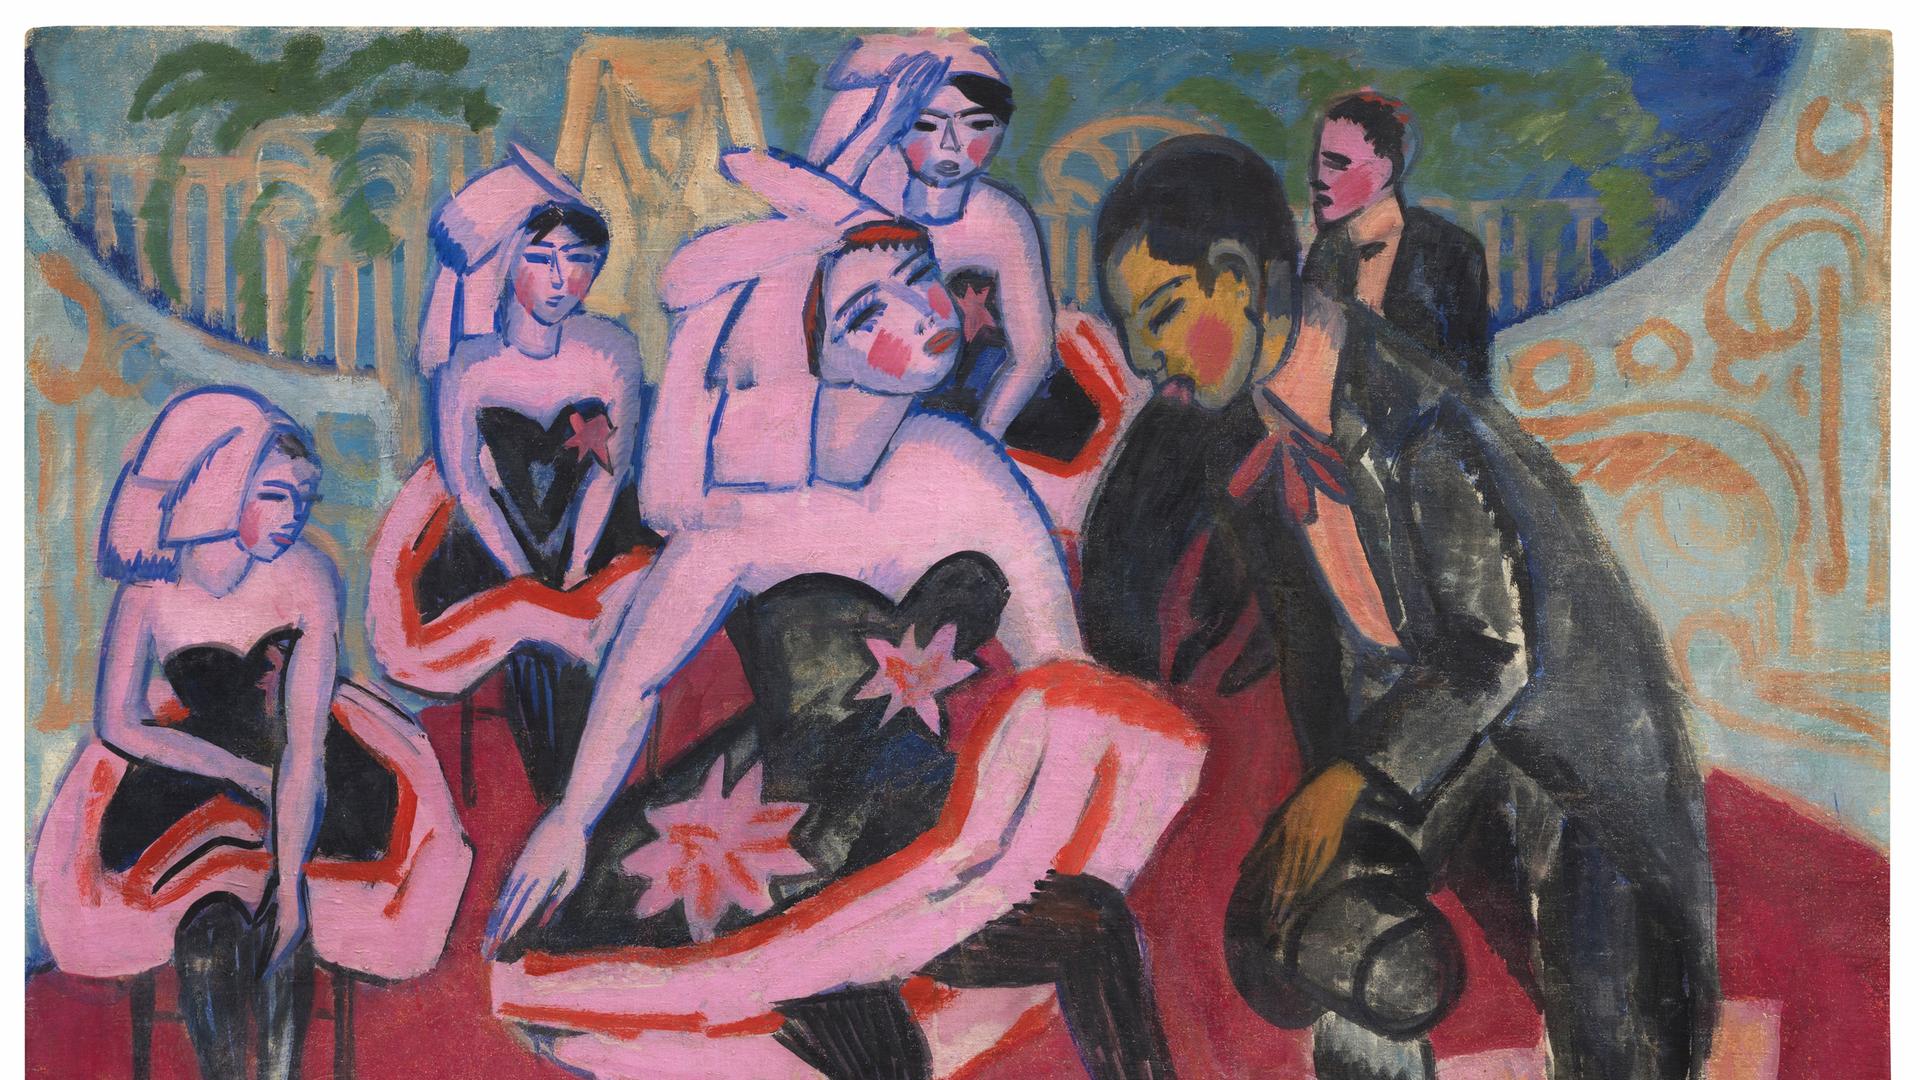 Kirchner-Gemälde "Tanz im Varieté". Das Gemäle zeigt eine Frau im kurzen Kleid, die mit einem Mann im Frack tanzt. Im Hintergrund sind ähnlich gekleidete Frauen zu sehen. Das Bild ist im expressionistischen Stil in bunten Farben gemalt. 